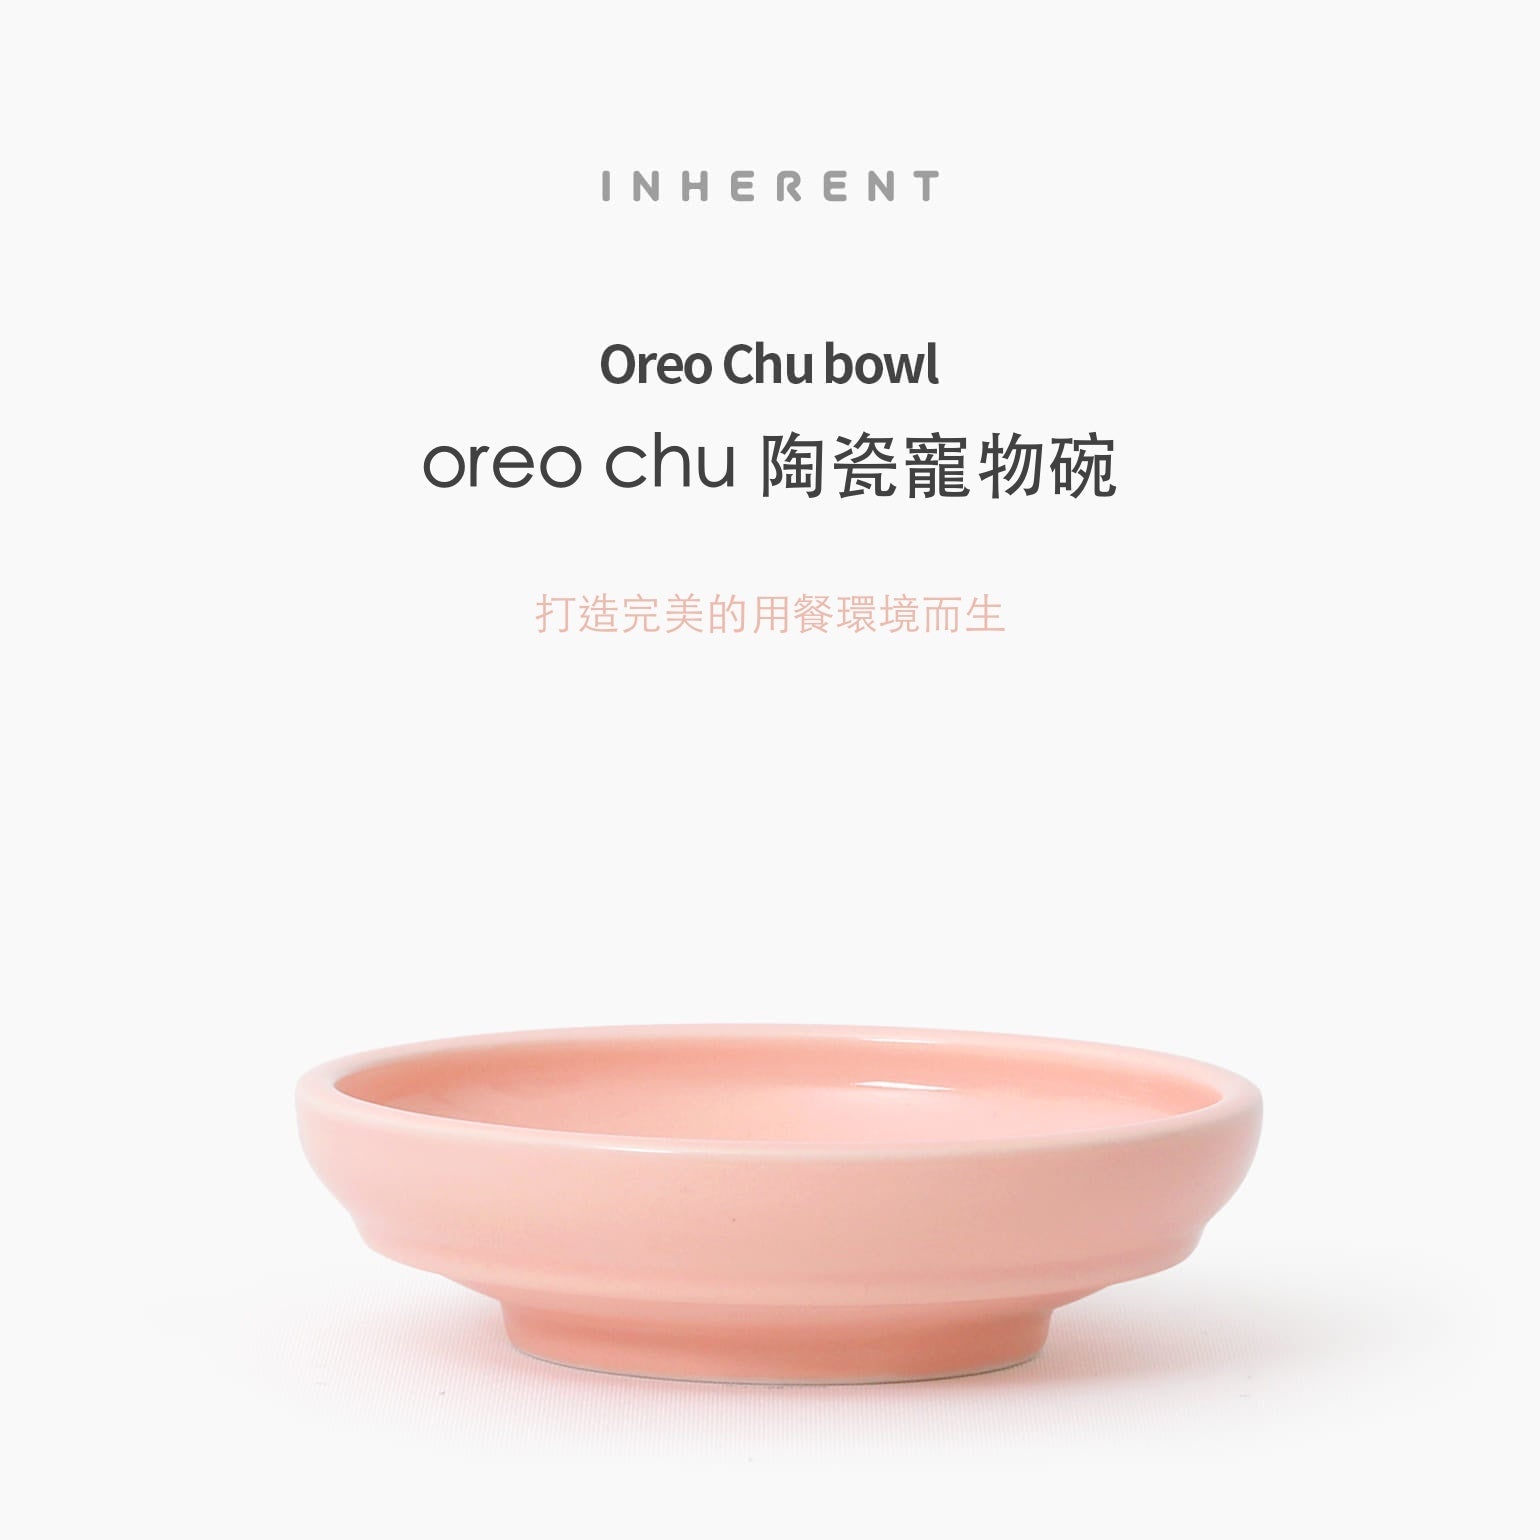 韓國 inherent 陶瓷寵物碗 oreo chu - LOVE PET FAMILY